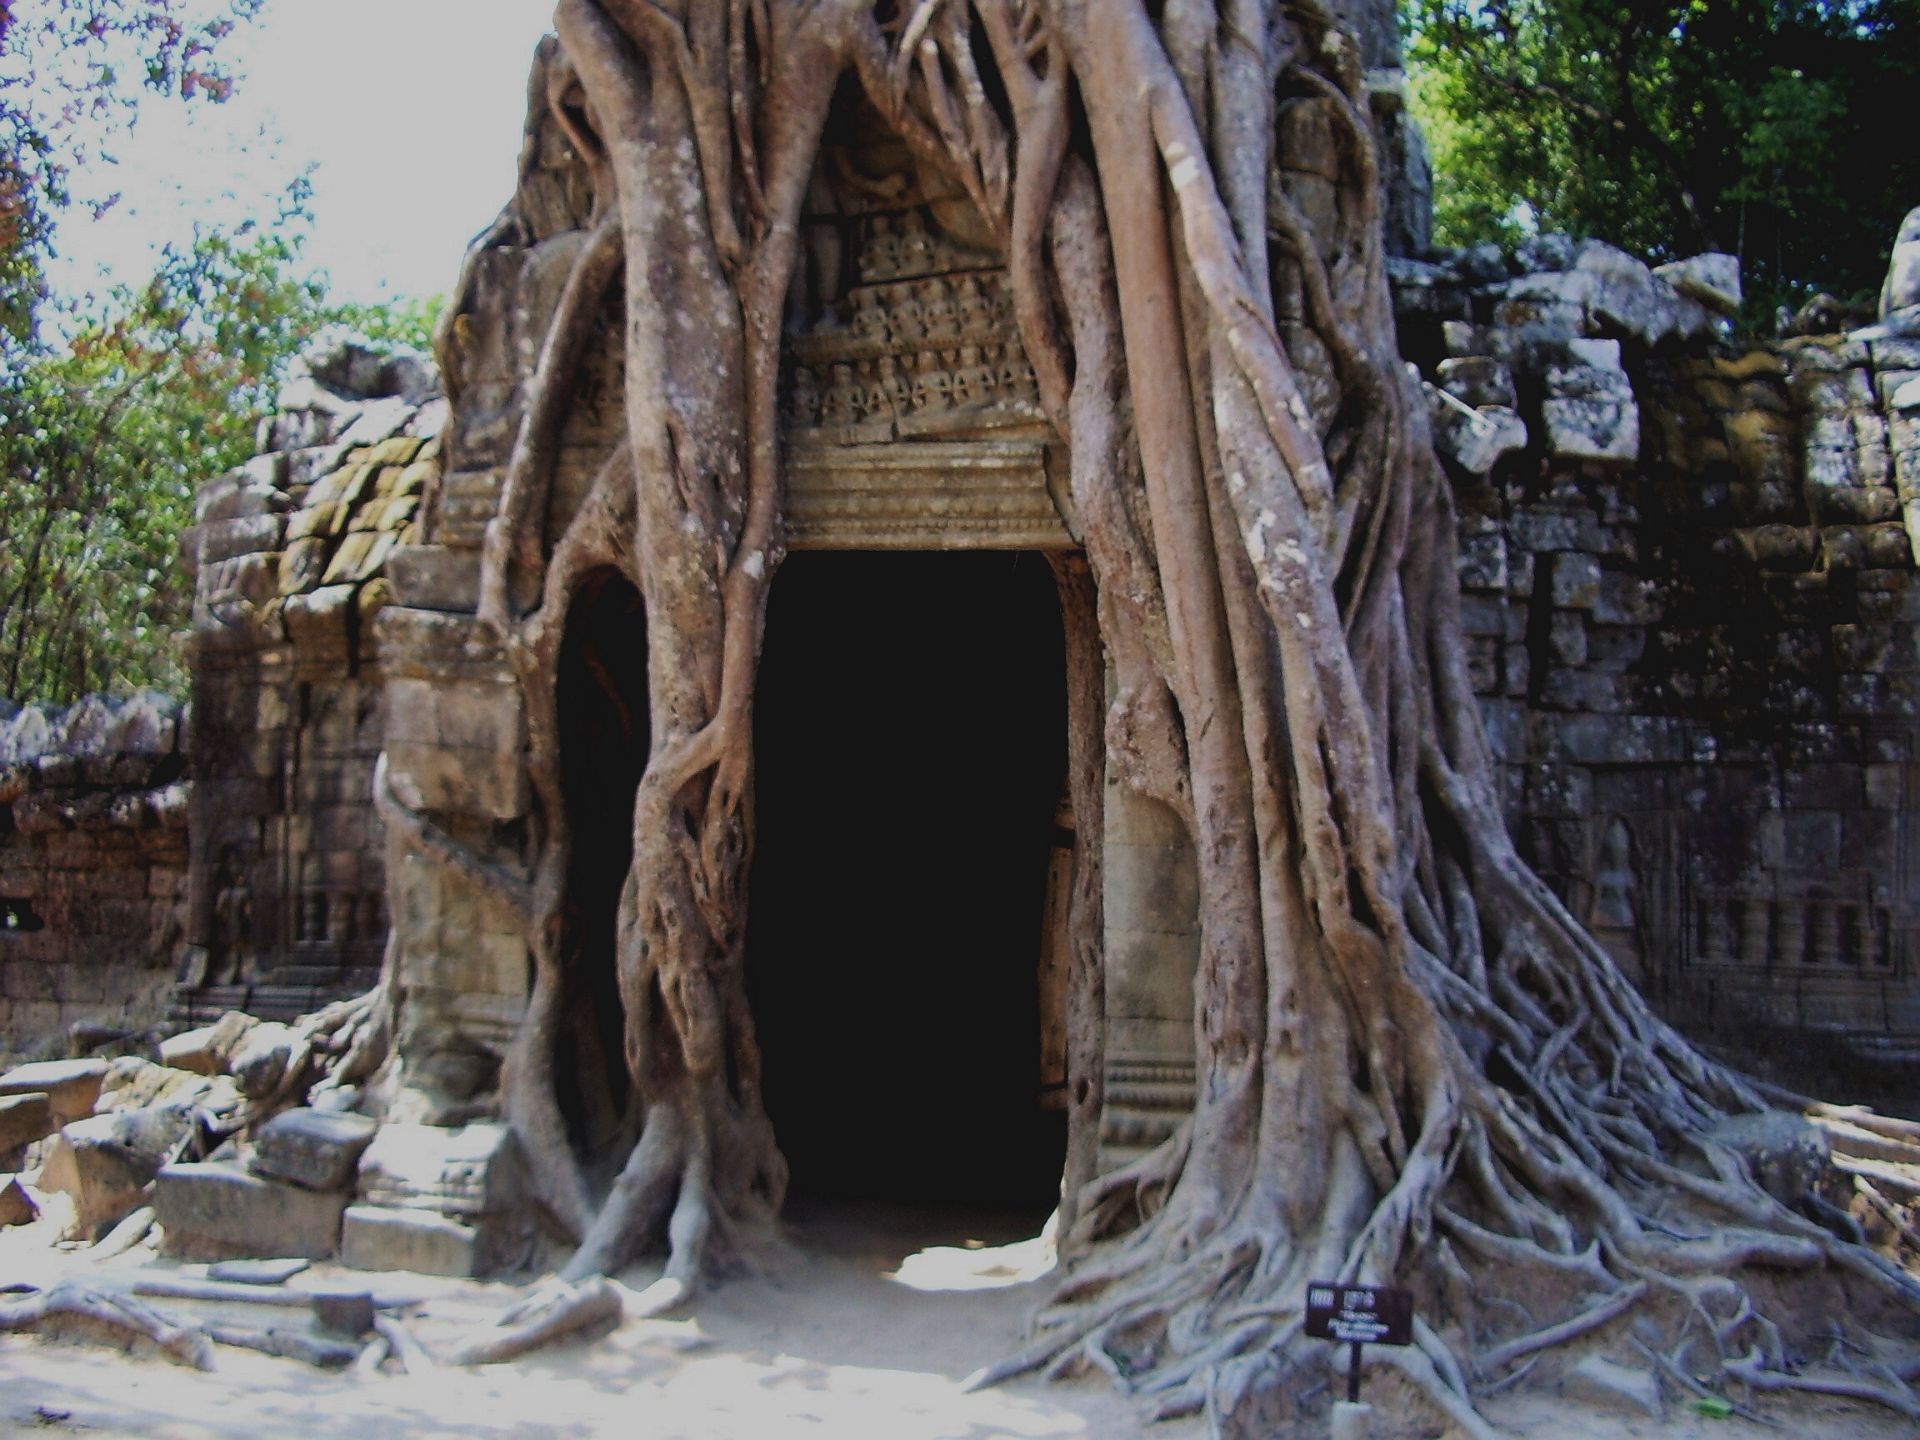 柬埔寨吴哥古迹塔逊寺 地理位置：柬埔寨吴哥古迹内 建筑年代： 12世纪晚期，13世纪 建筑风格： 巴